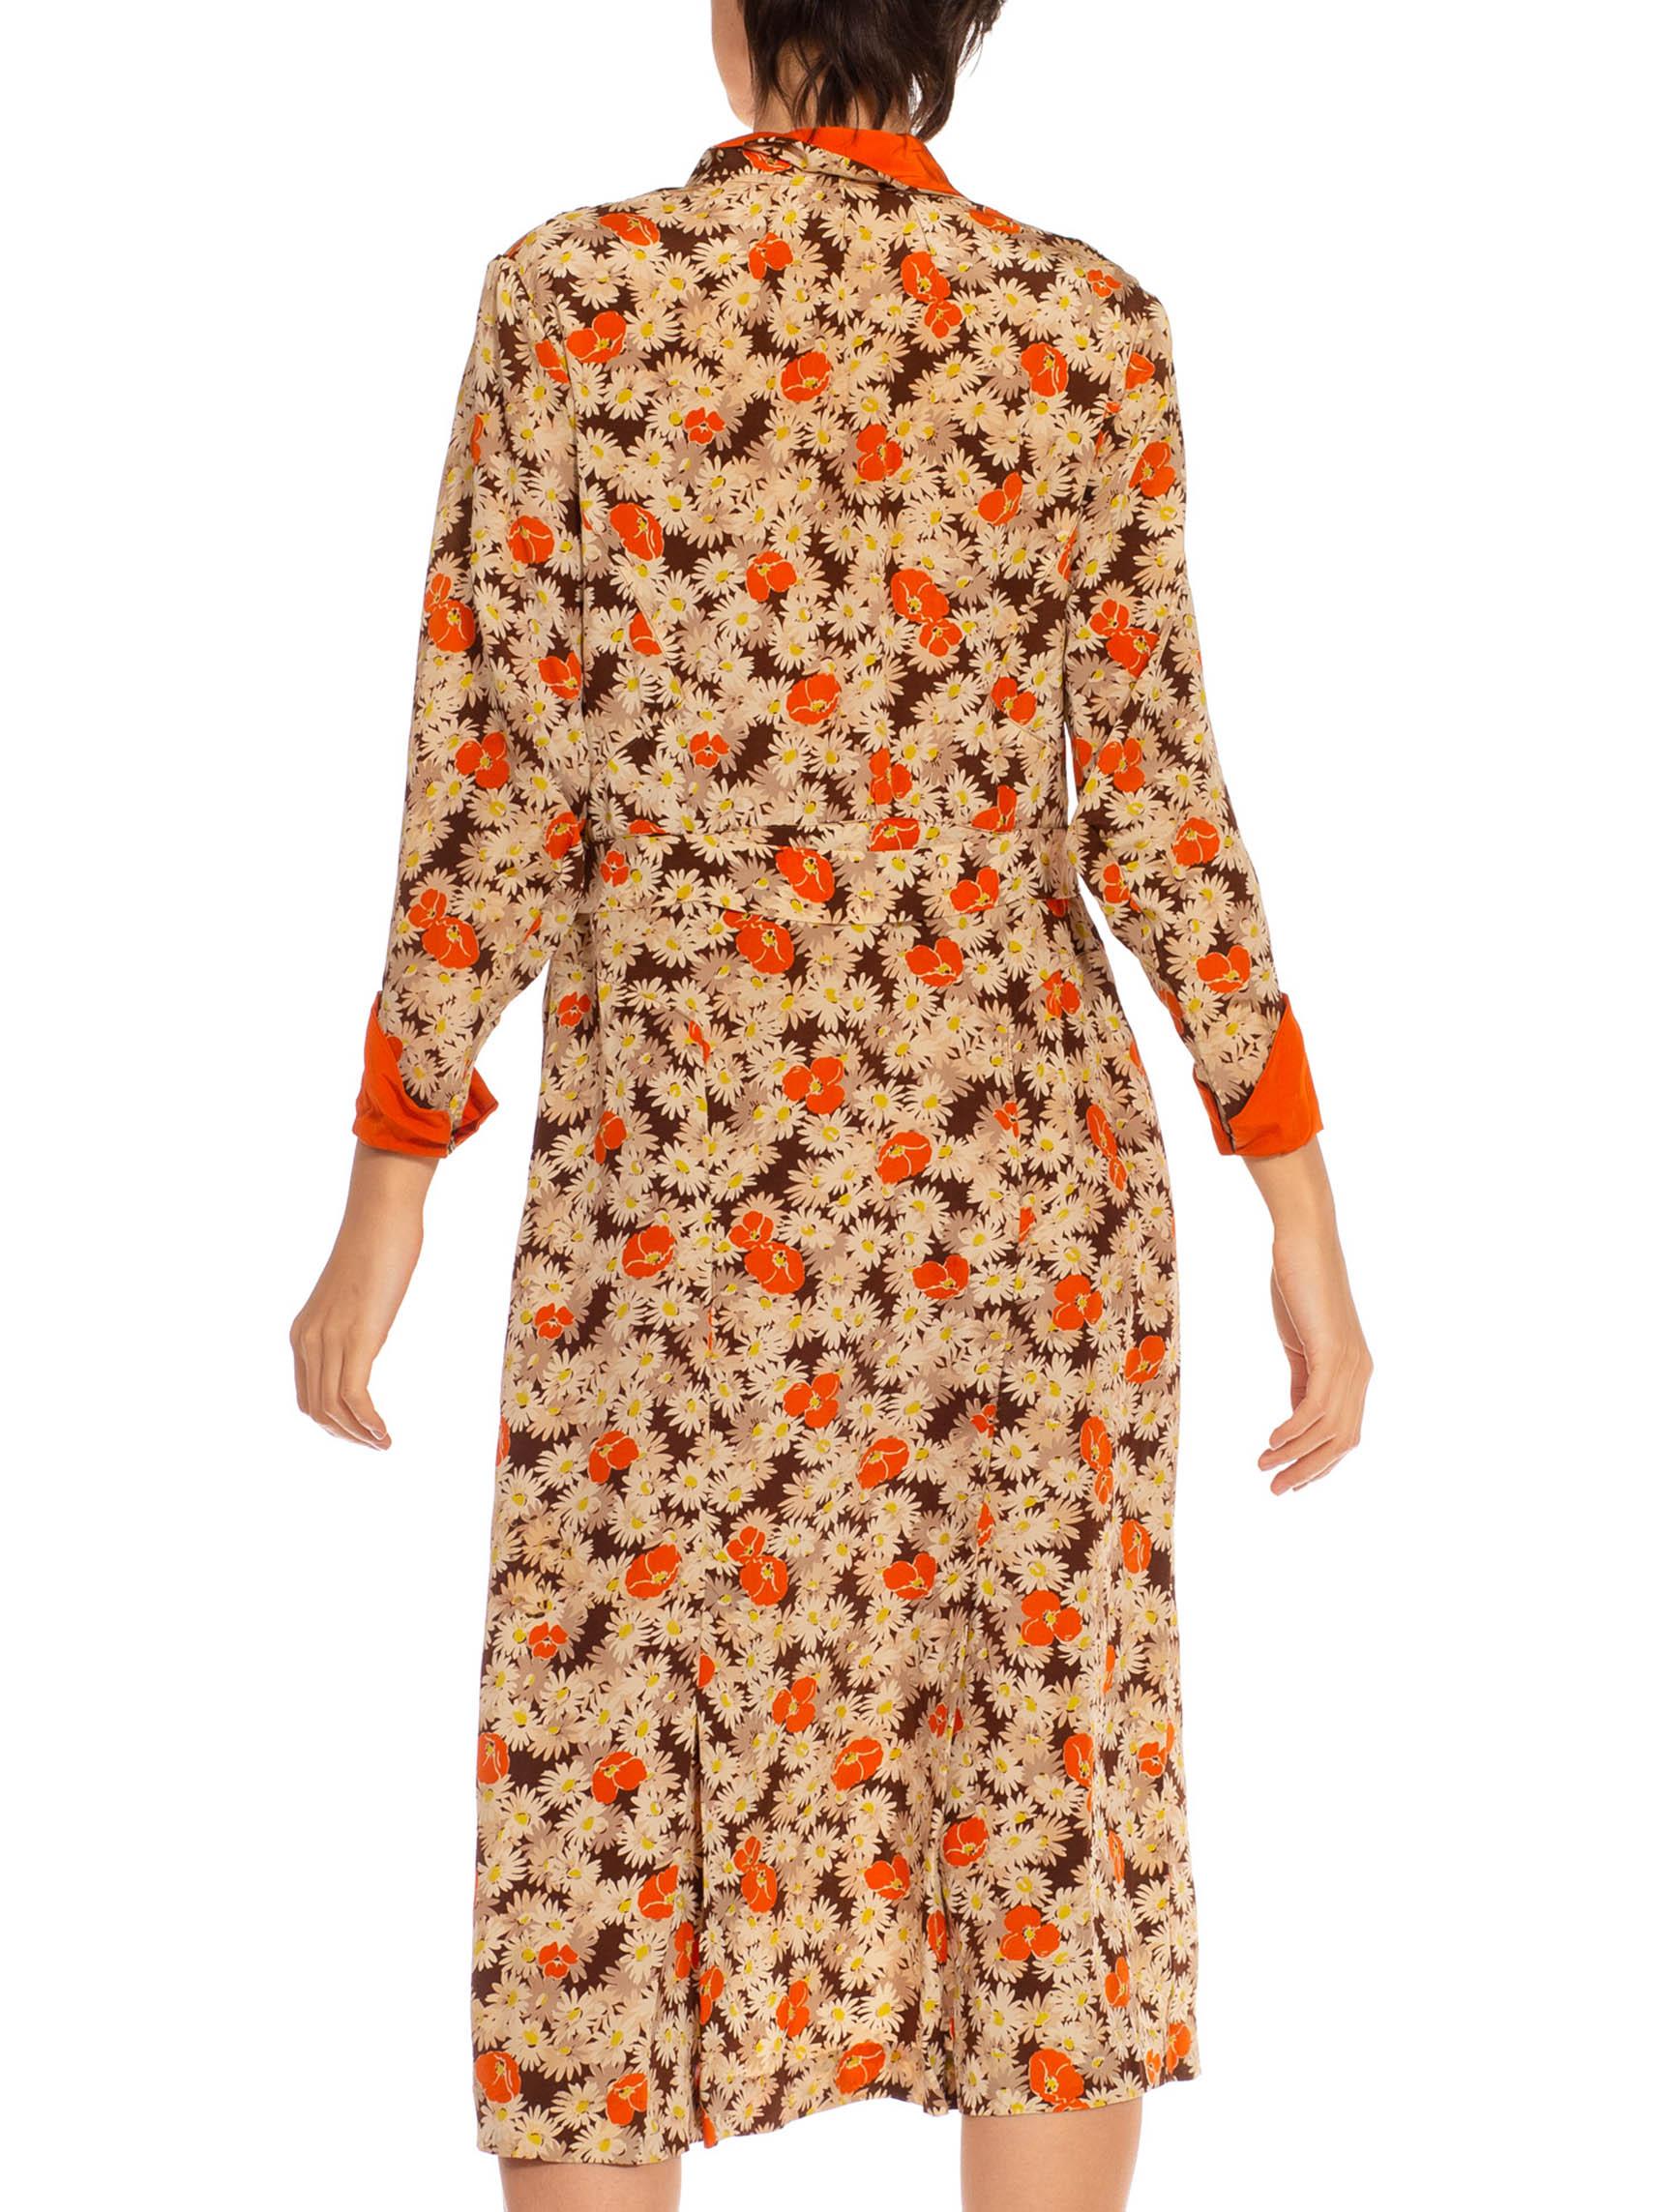 Robe marguerite imprimée en soie mélangée orange et crème à imprimé coquelicot, années 1930 Excellent état - En vente à New York, NY